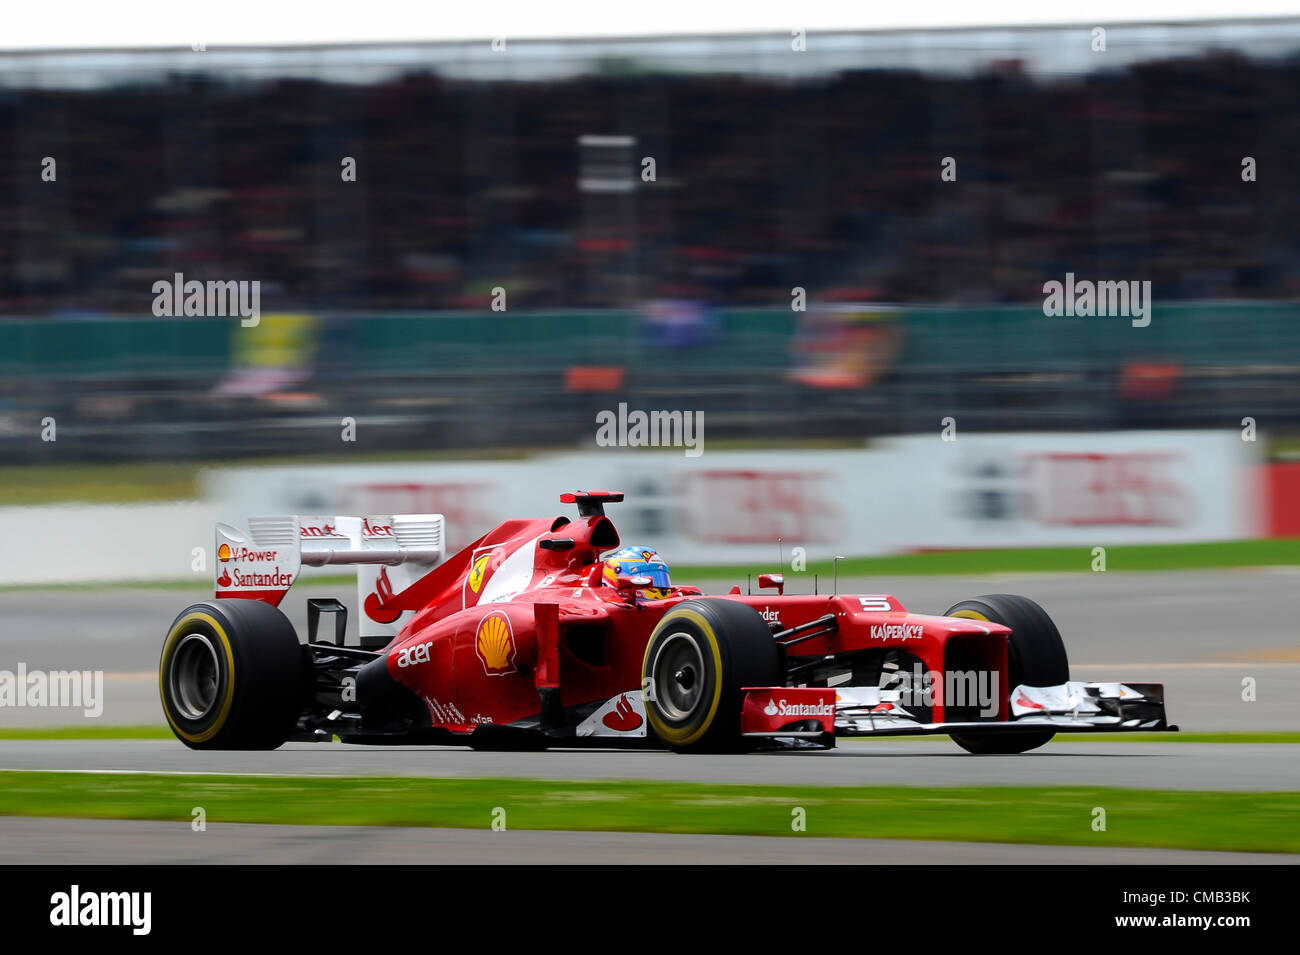 08.07.2012 Towcester, England. Fernando Alonso Spanien und Scuderia Ferrari in Aktion während des Rennens beim britischen Grand Prix Santander, Runde 9 der 2012 FIA Formel 1 Weltmeisterschaft in Silverstone. Stockfoto